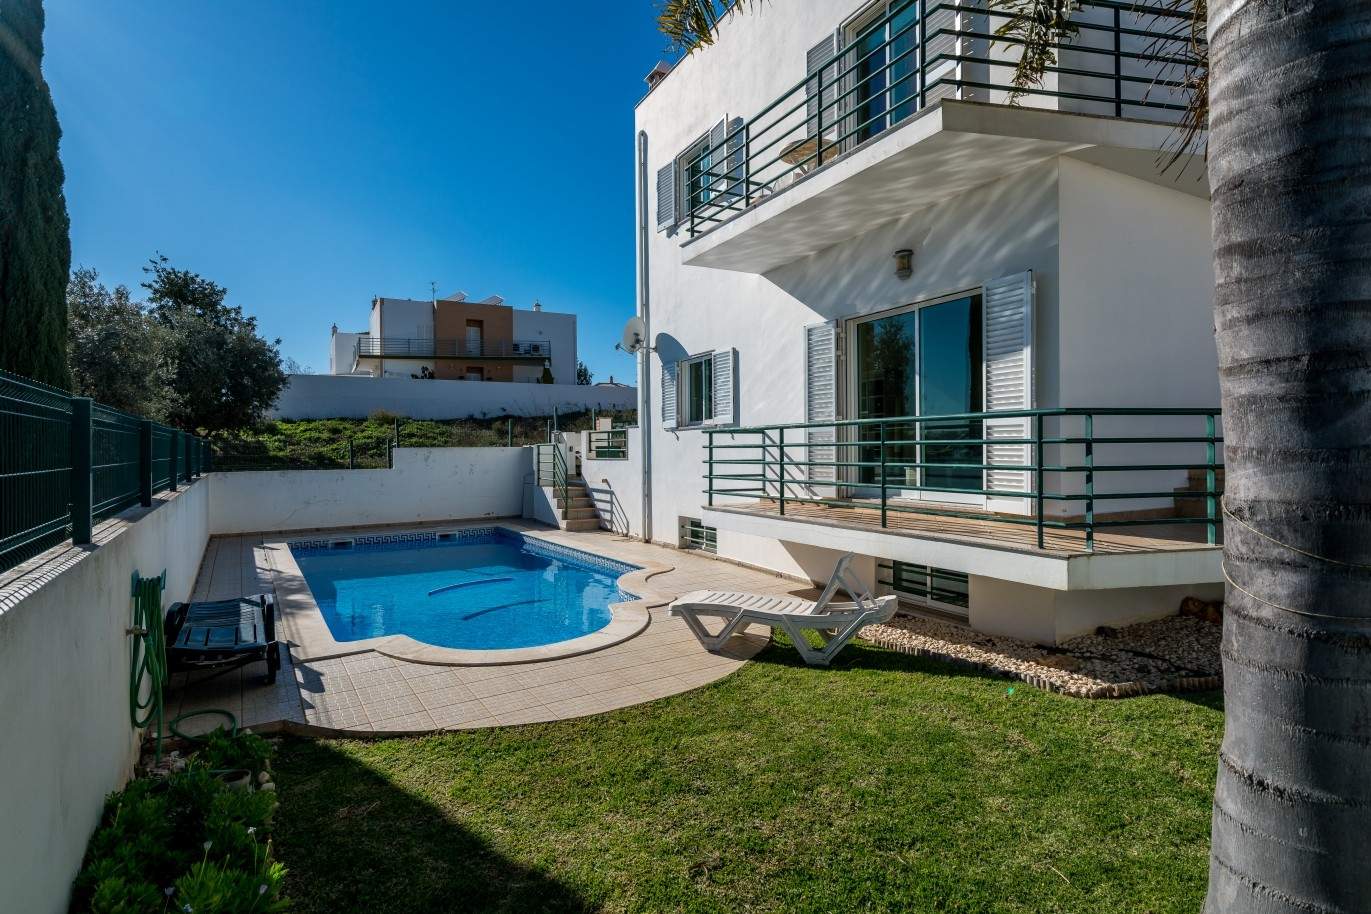 Freistehende villa zum Verkauf mit pool, in der Nähe von Strand und golf, Albufeira, Algarve, Portugal_73898